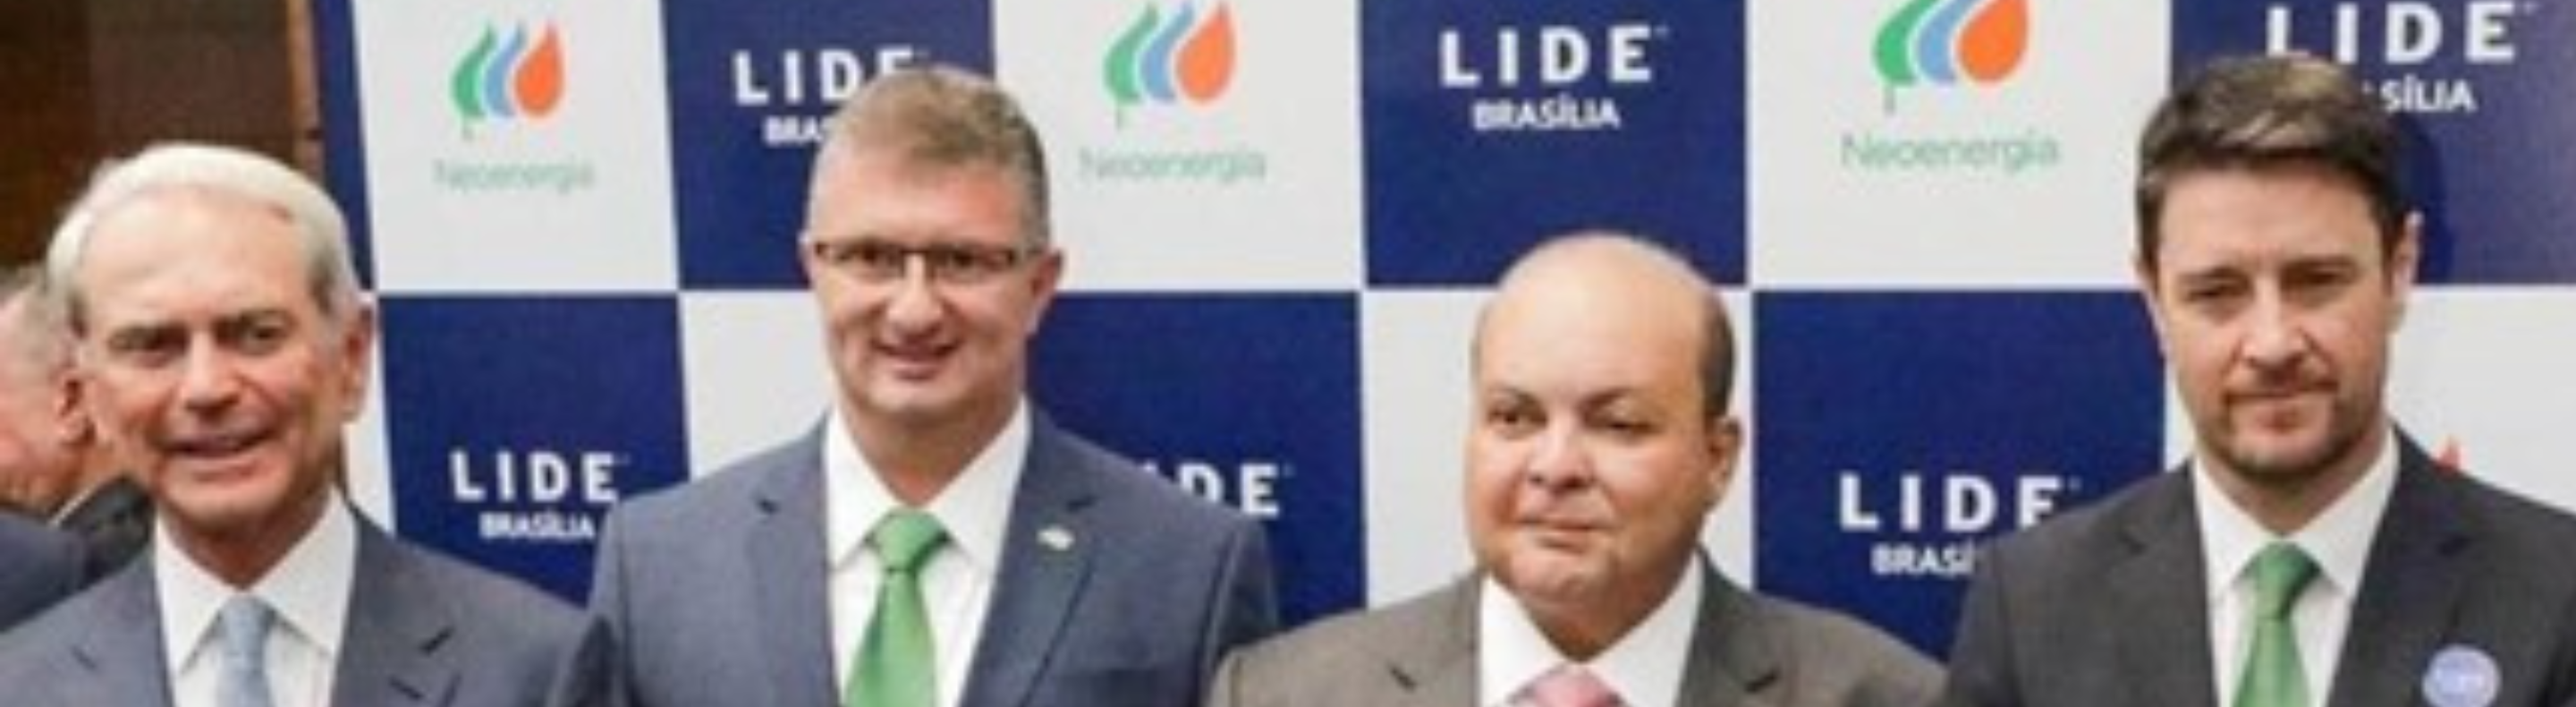 Em reunião com membros do Lide, distribuidora anunciou também que a meta é regularizar a energia de 40 mil famílias na capital federal